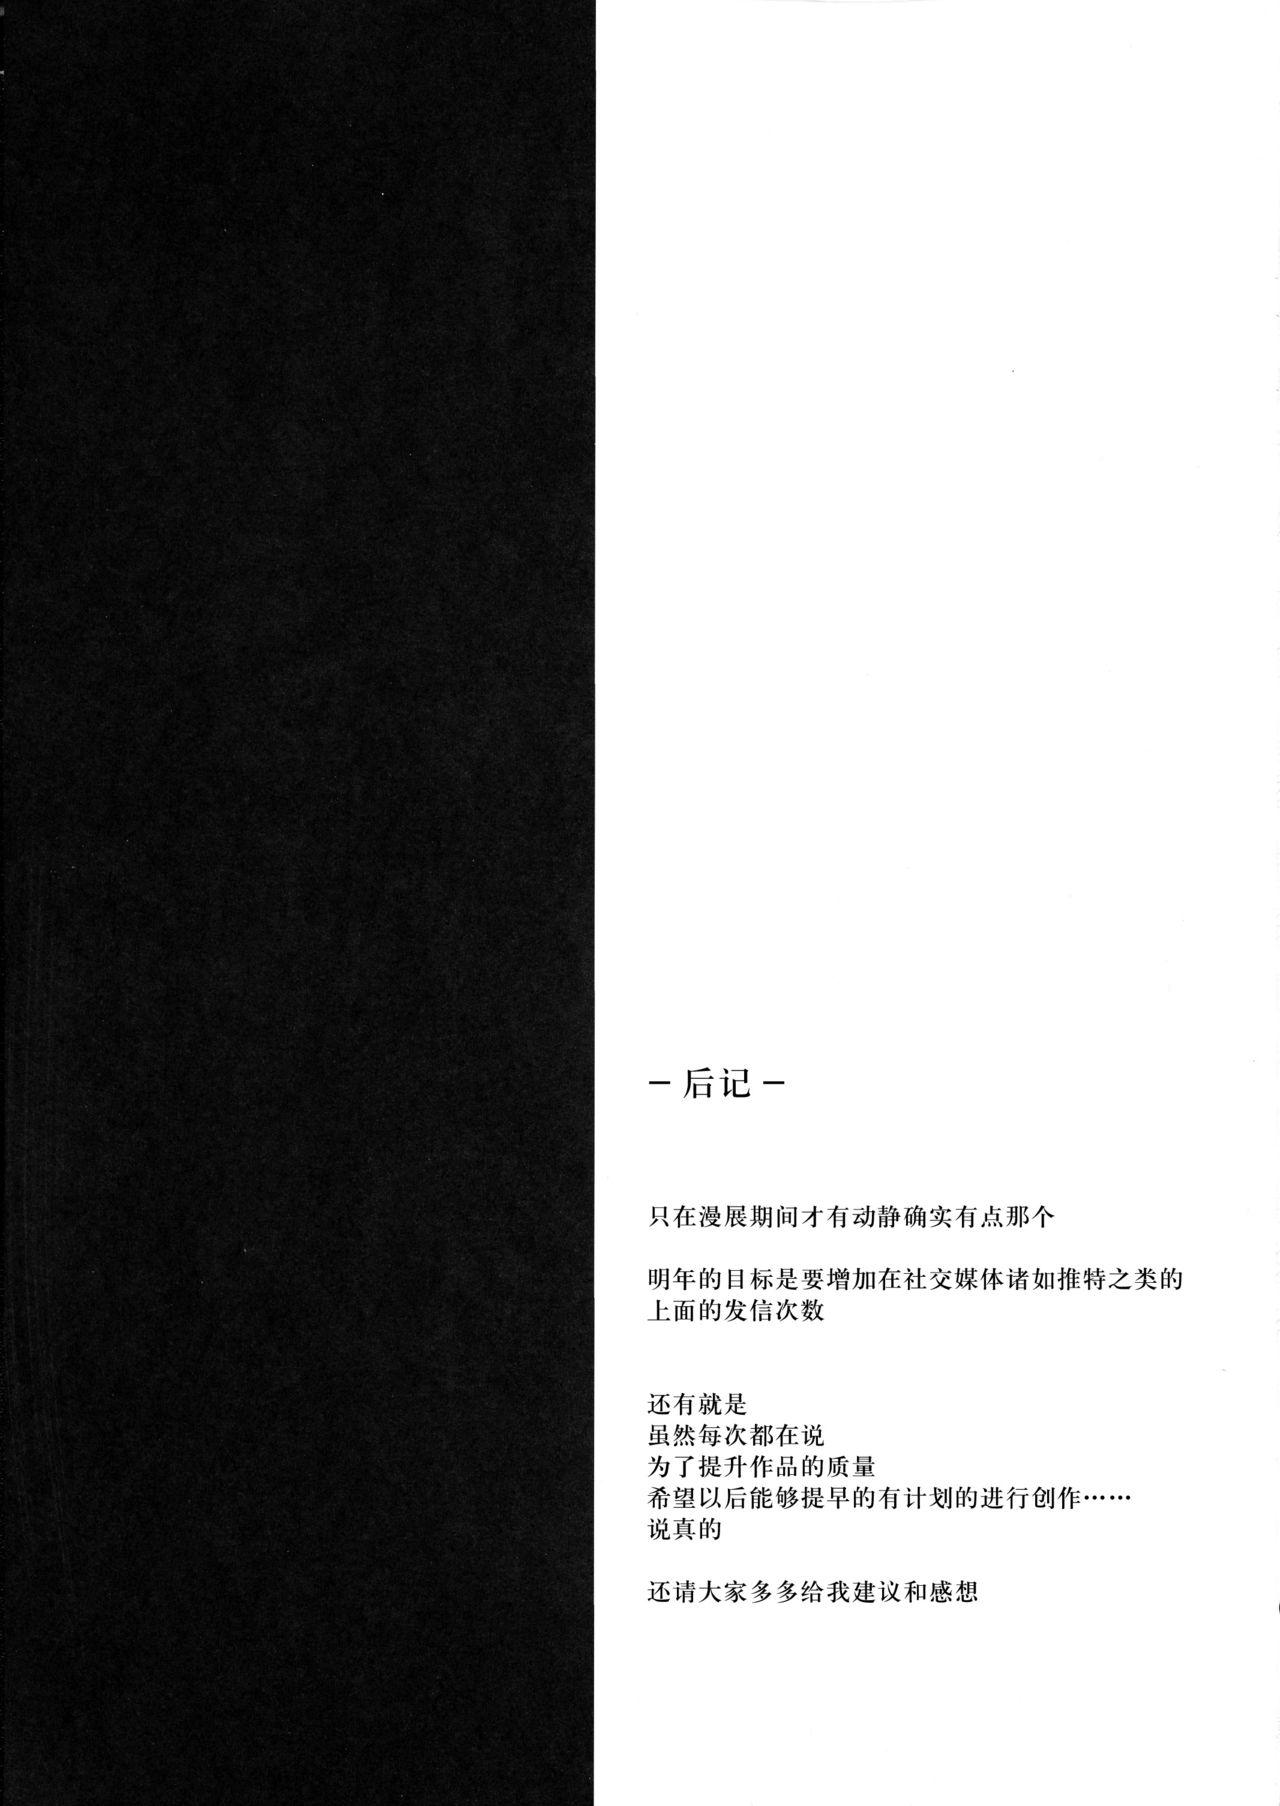 (FateGrandOrder) Bản dịch Trung Quốc (18 trang)-第1章-图片173